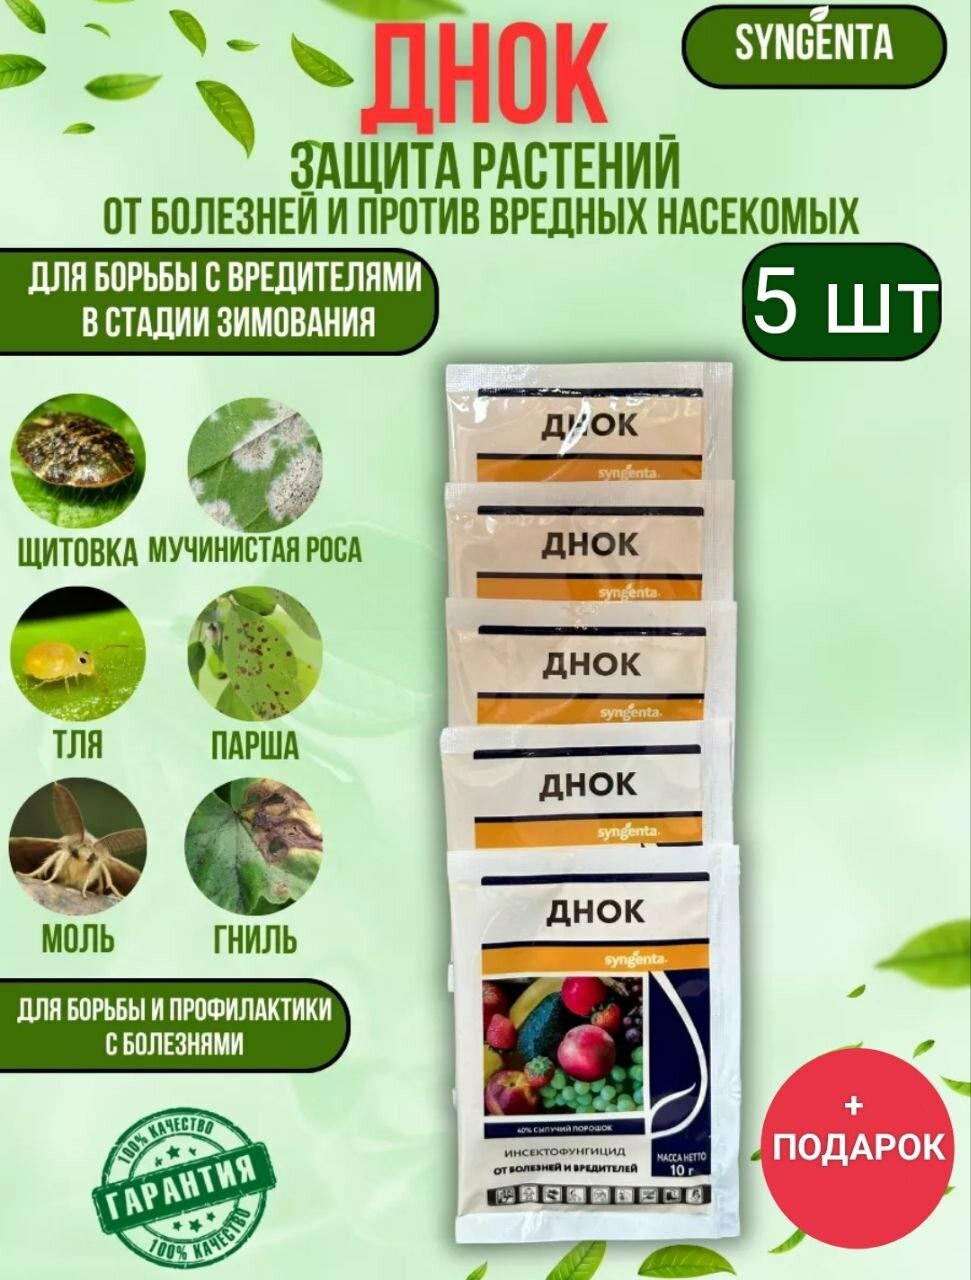 Днок" - инсектофунгицидная обработка сада от вредителей и болезней, 5 штук и подарок